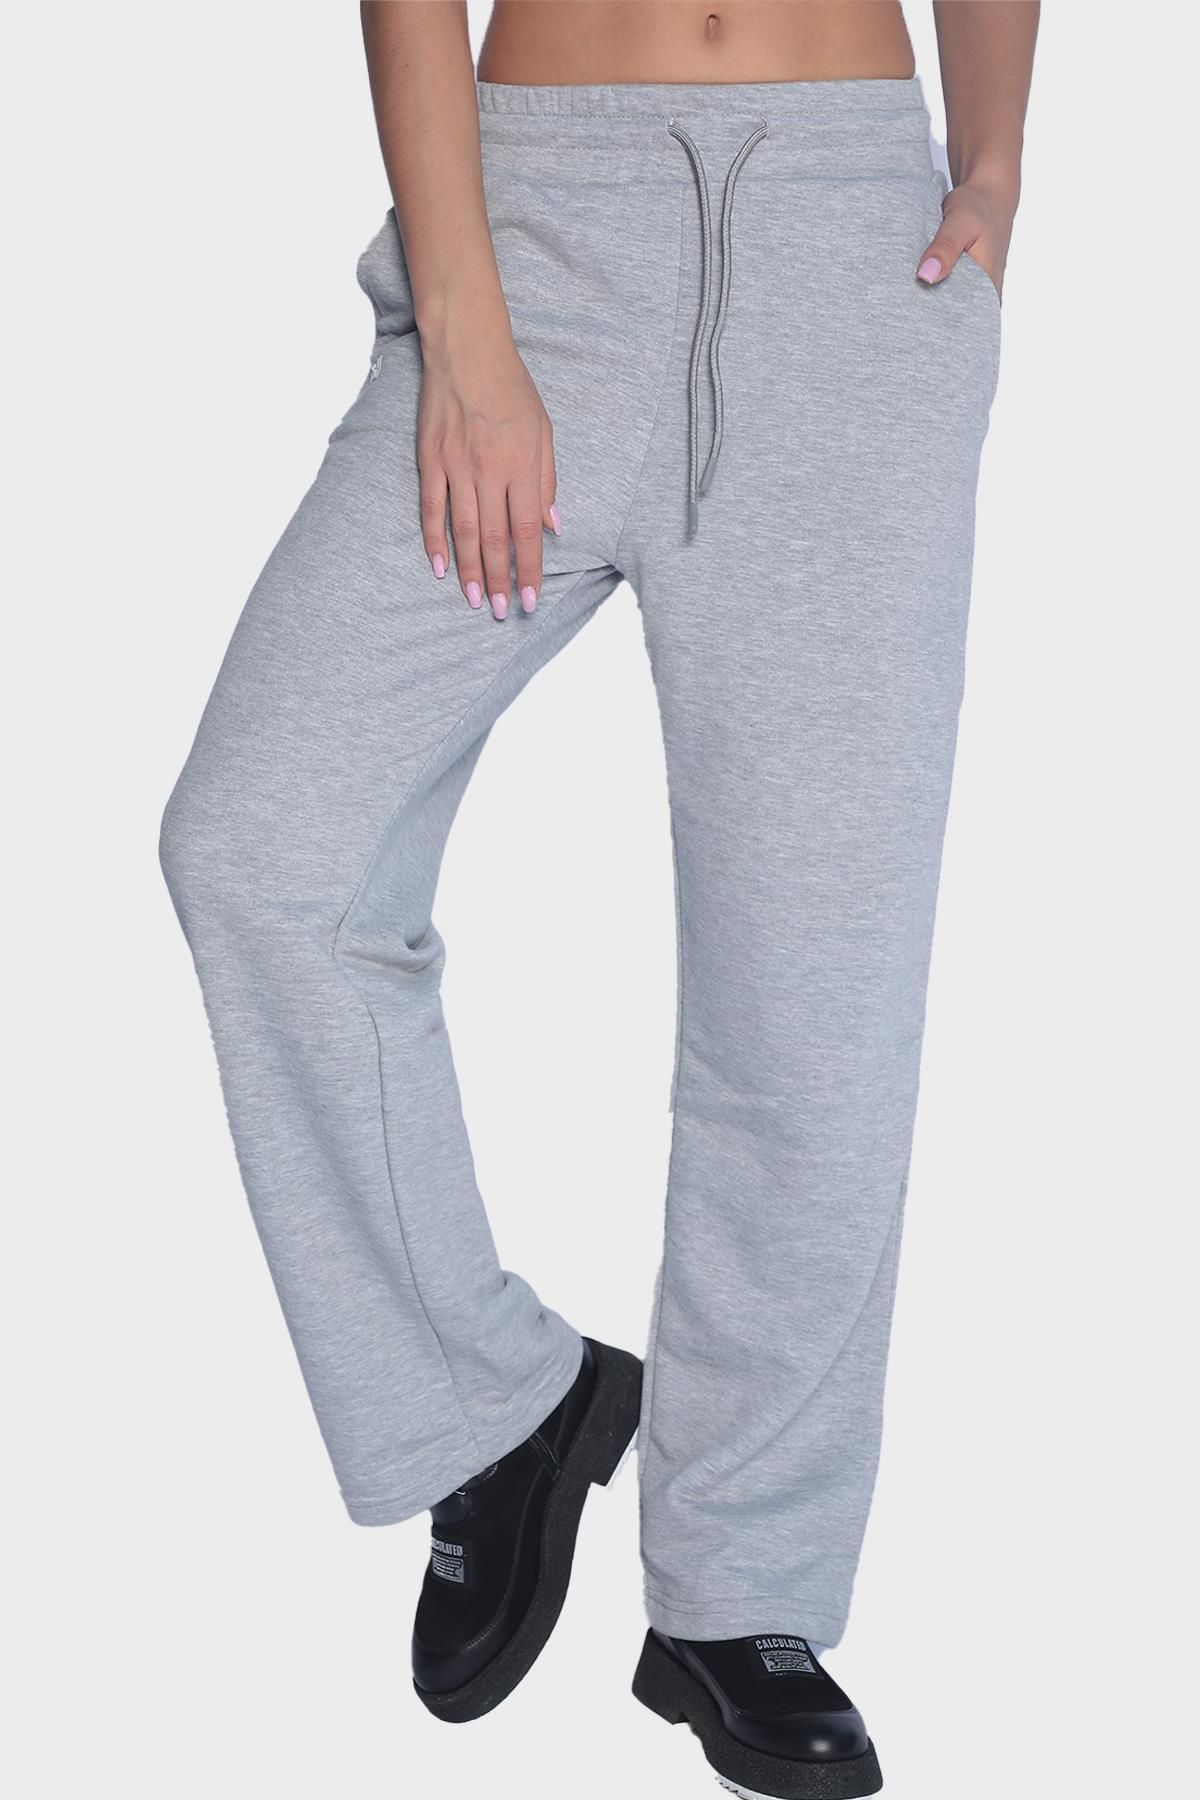 Женские широкие спортивные штаны с эластичной талией - Серый